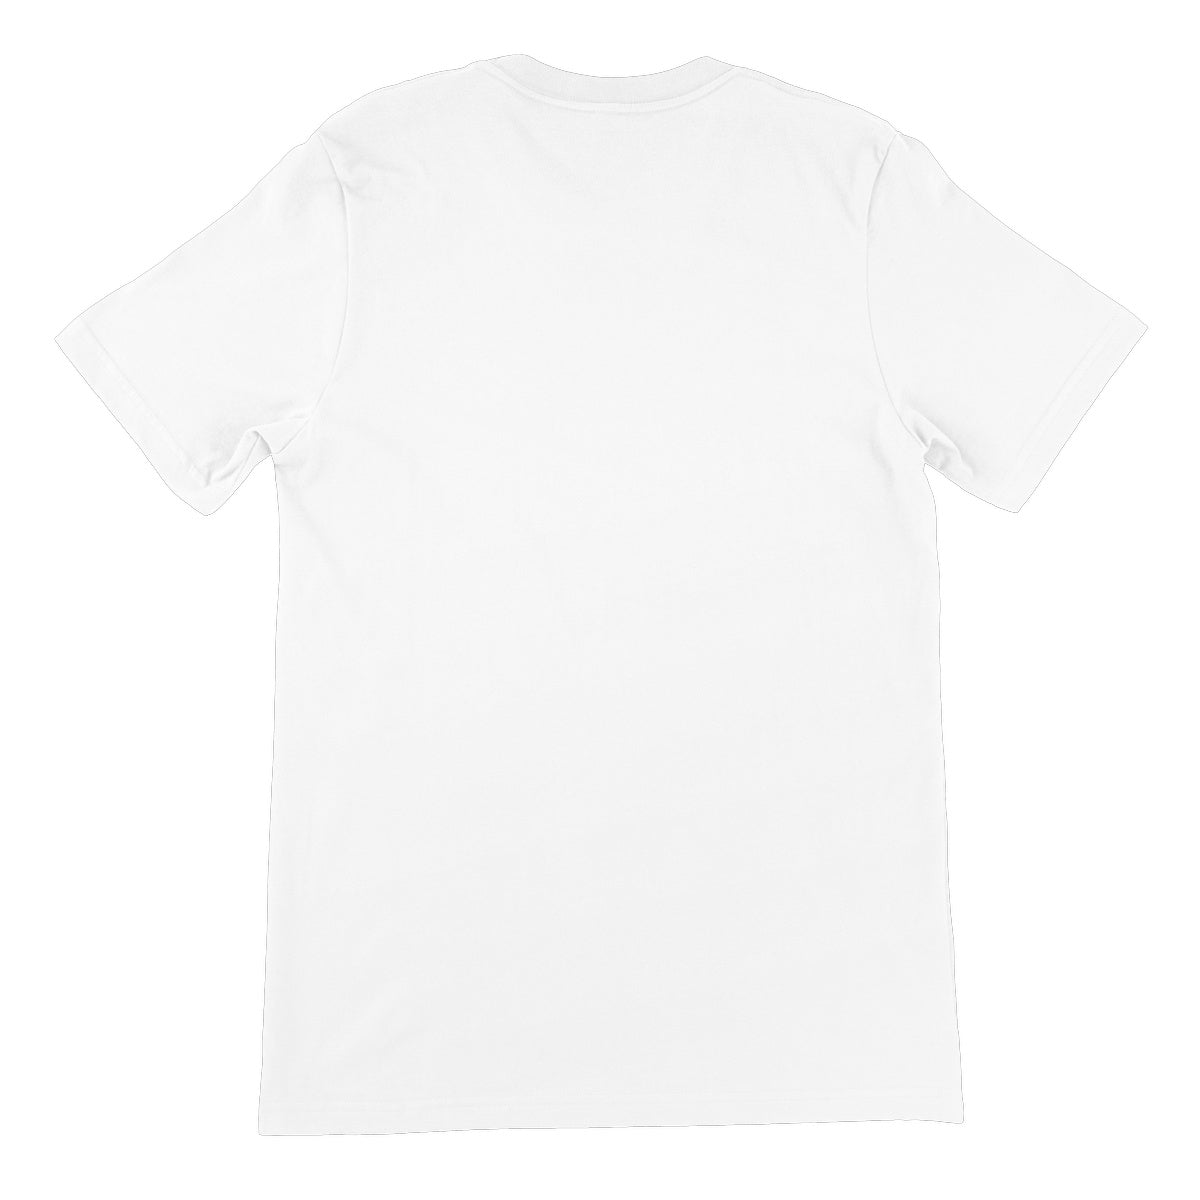 RASCALZ - Welcome Treehouse (White) Unisex Short Sleeve T-Shirt